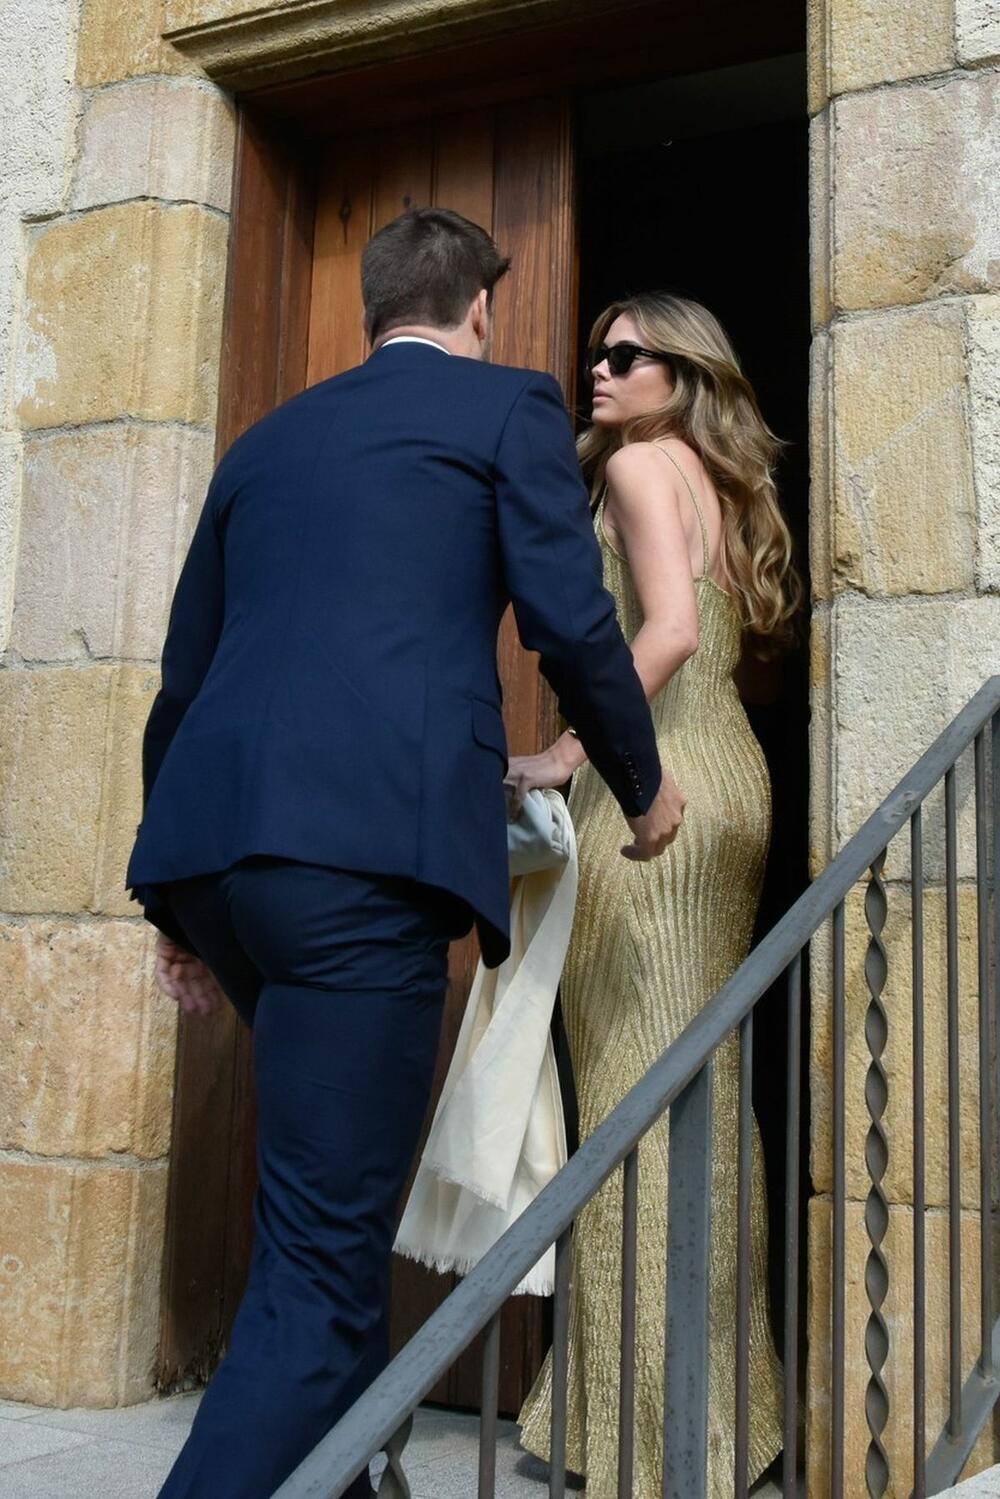 Đerar Pike i Klara Čija Marti su na venčanju njegovog brata brzo prošli pored foto-reportera